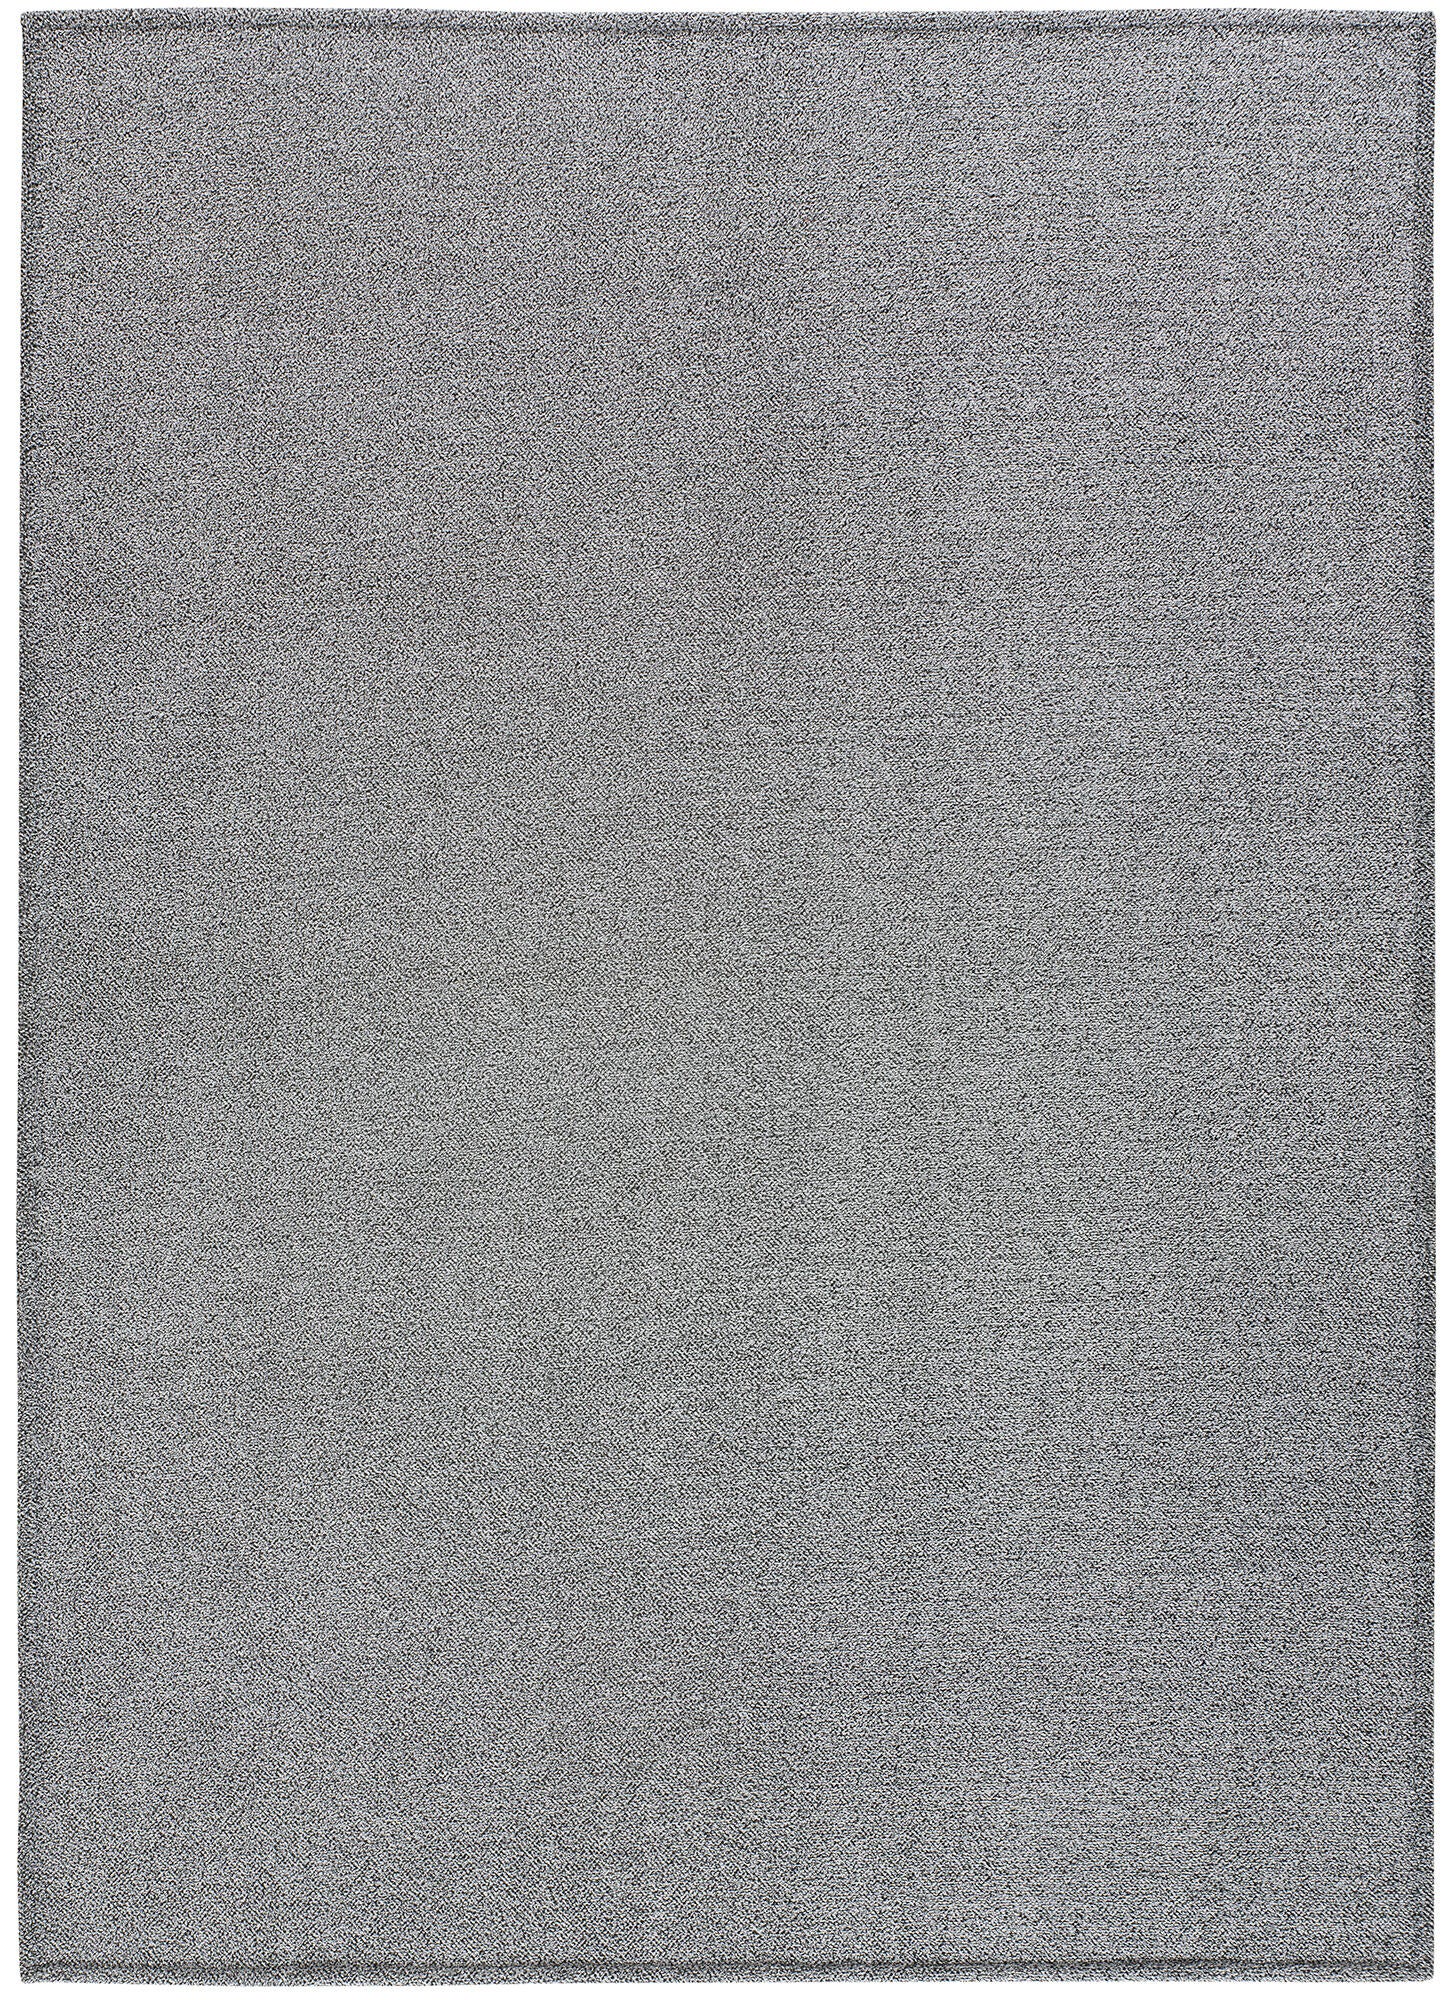 Alfombra poliéster saffi liso gris 160x230cm